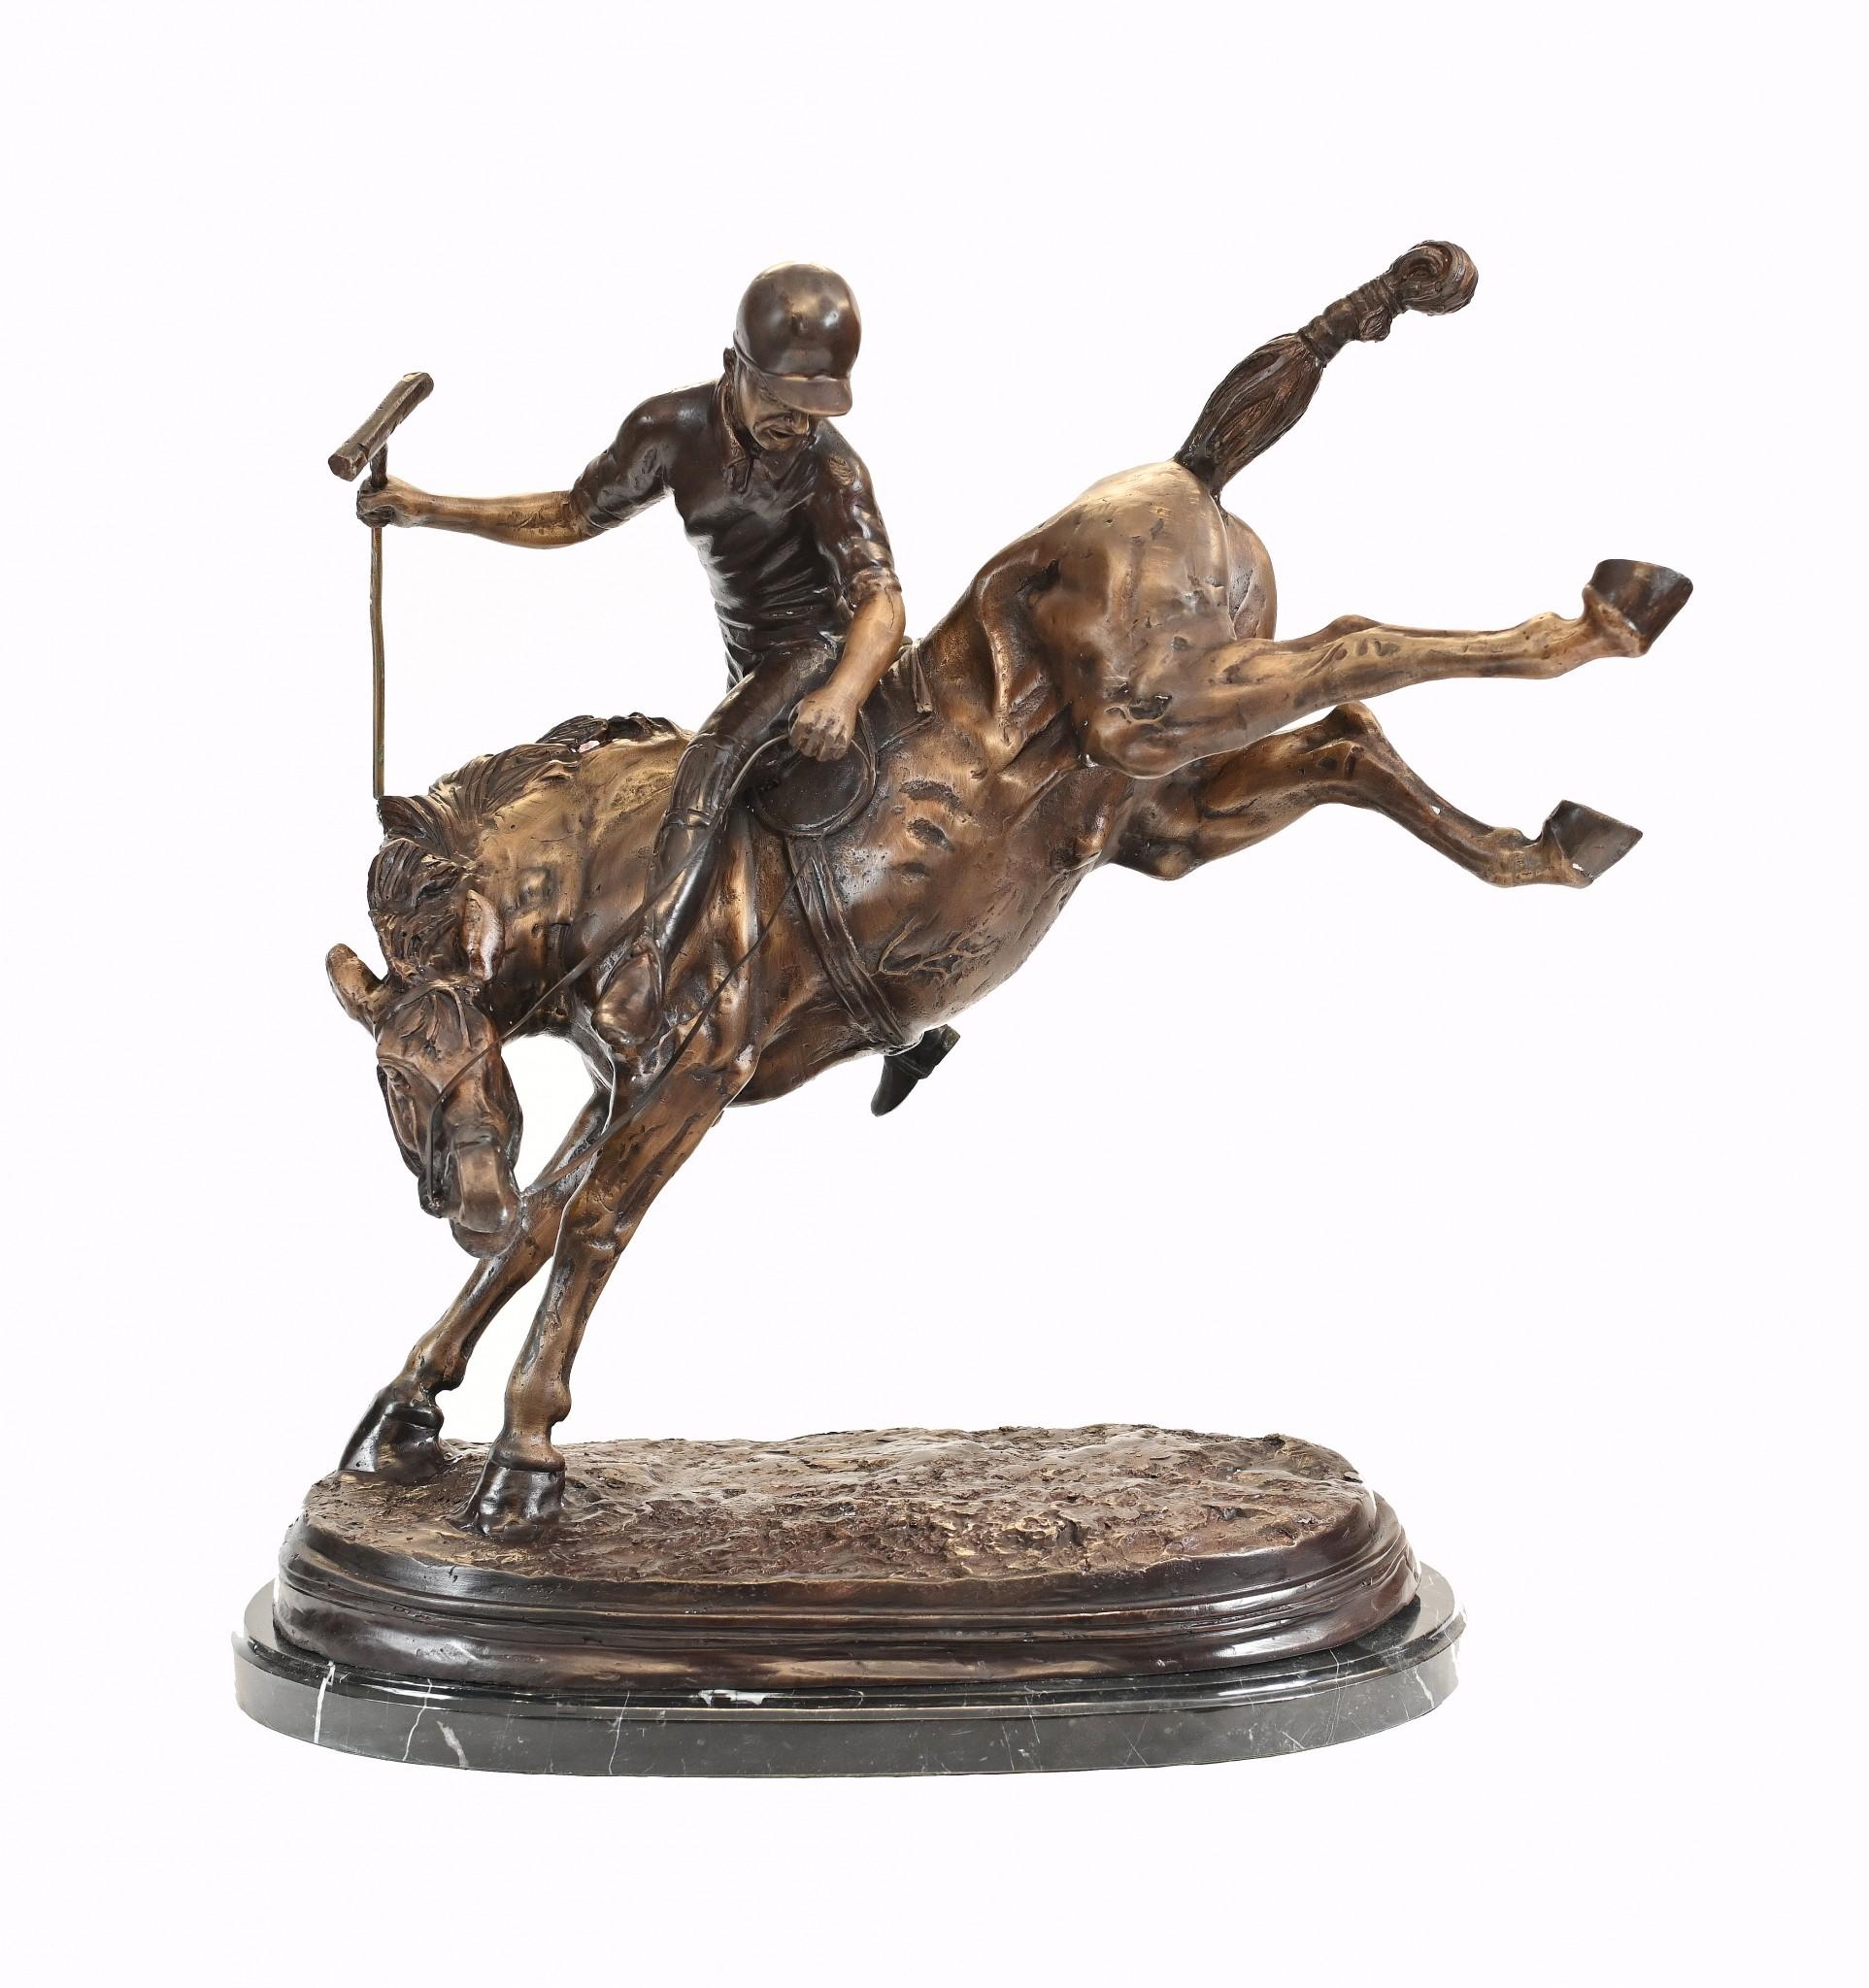 Superbe statue en bronze anglais représentant un joueur de polo sur un cheval de bronze.
Elle mesure plus de deux pieds de haut, ce qui en fait une œuvre impressionnante.
La patine du bronze est superbe et l'objet est prêt à être exposé.
Pas de